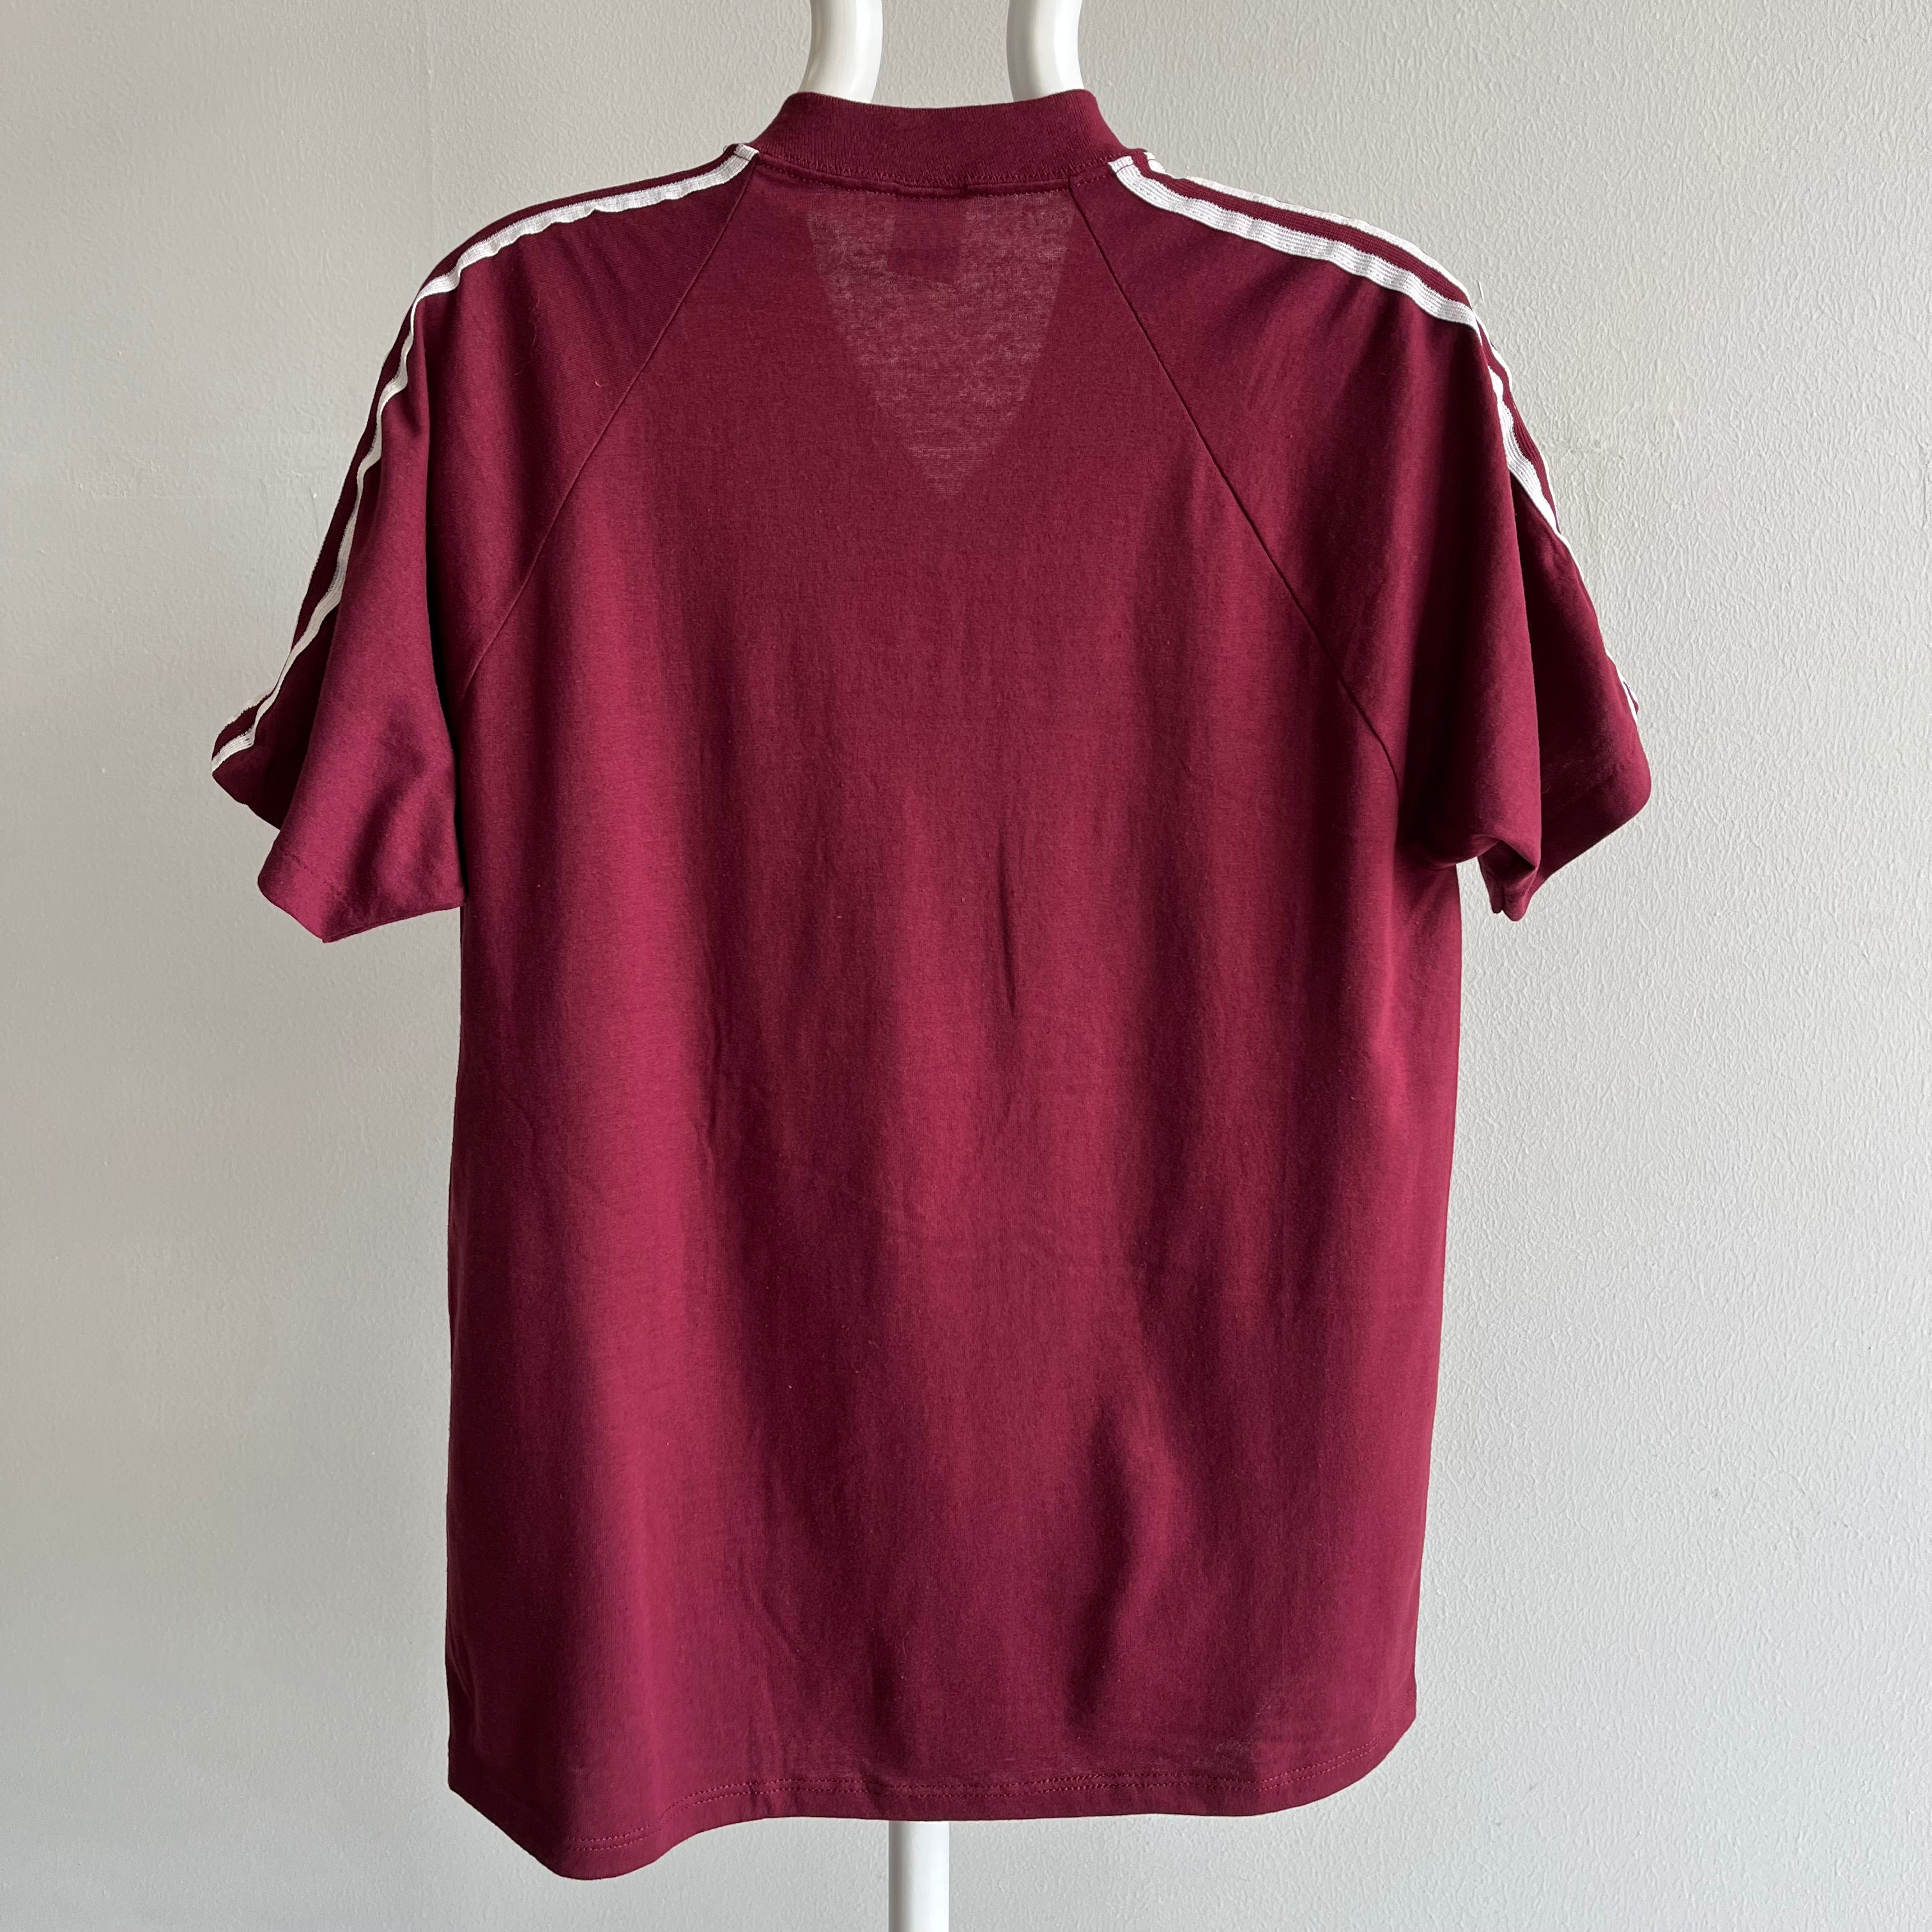 1980s V-Neck Shoulder Striped T-Shirt by Jerzees